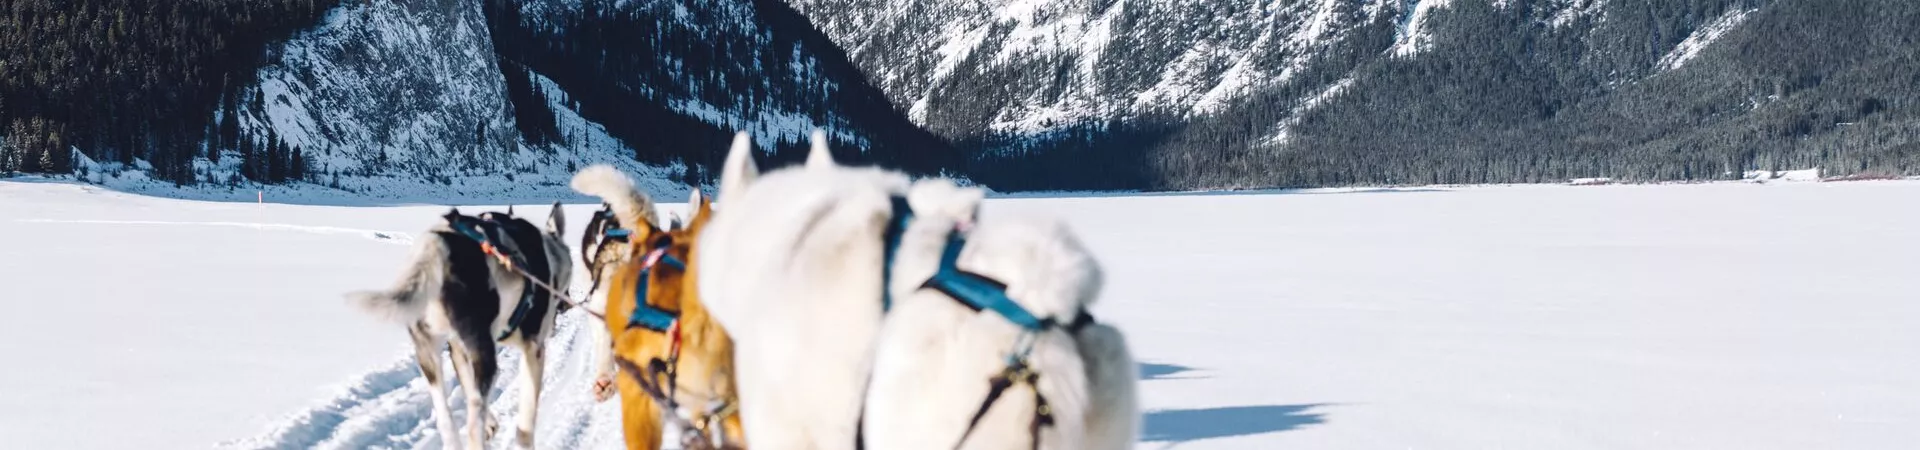 Huskies pulling sled